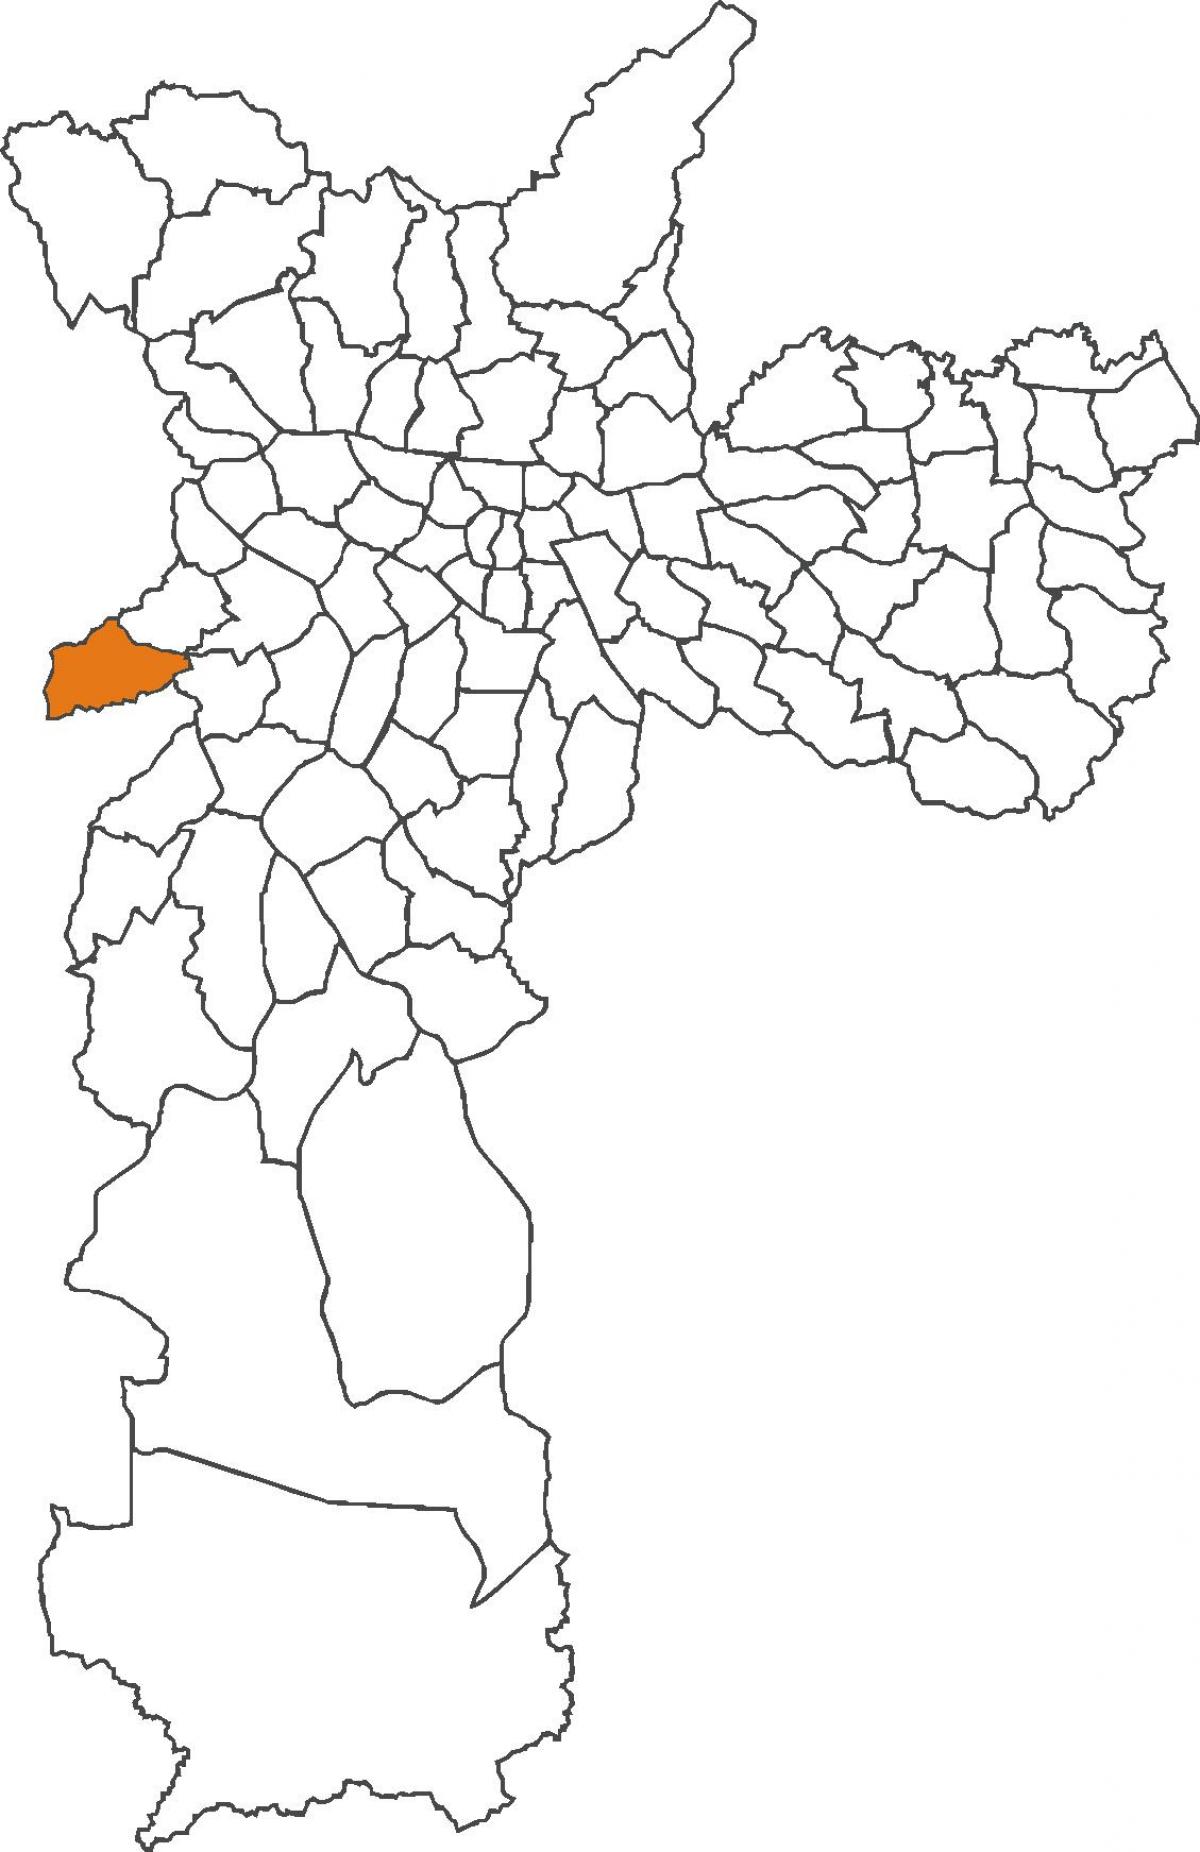 Mapa ng Raposo Tavares distrito